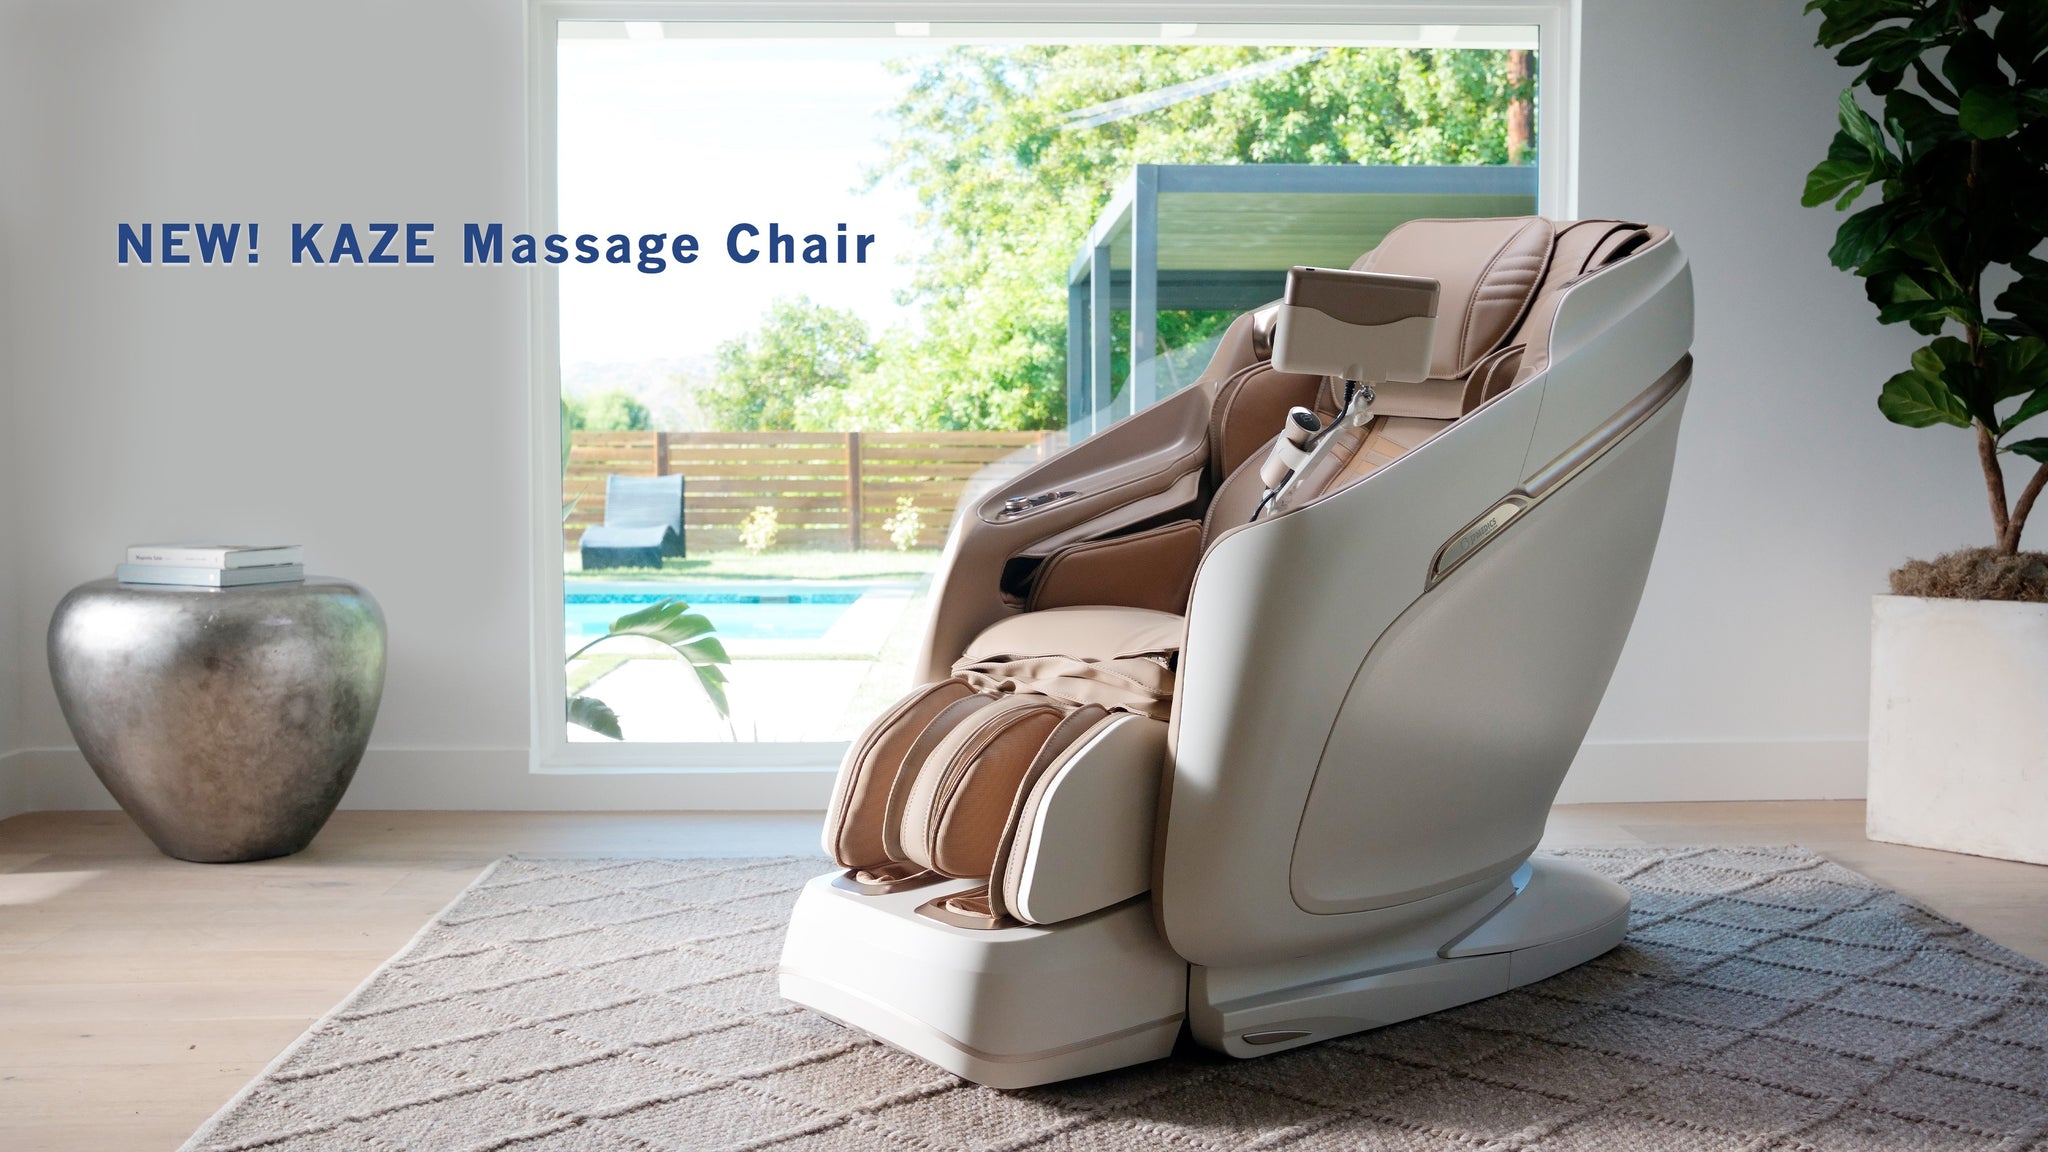 JPMedics Massage Chairs, Vibration Machines & Wellness Products